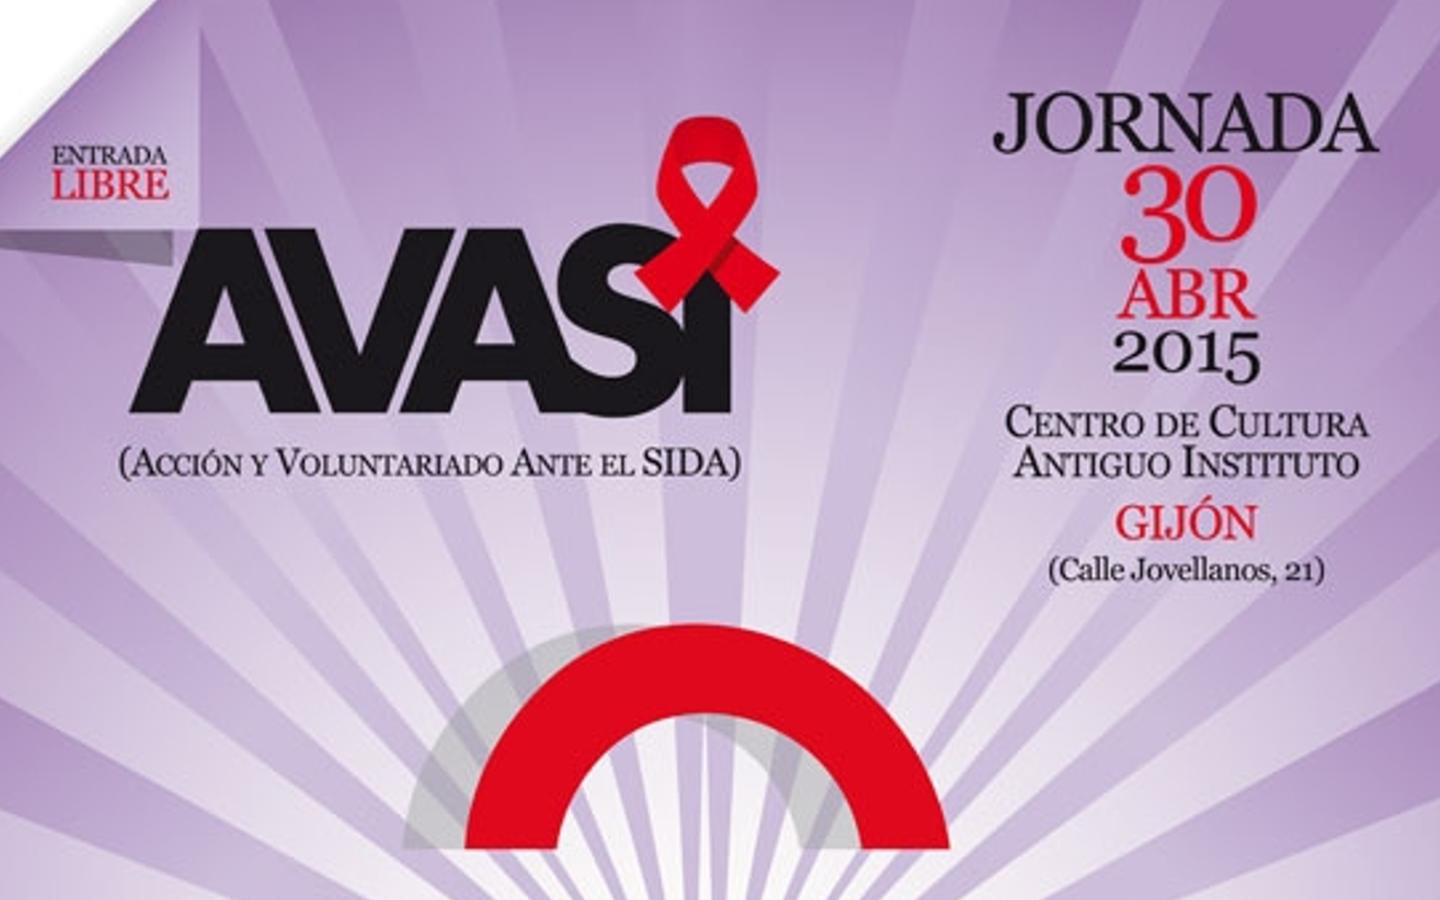 AVASI 2015 Acción y Voluntariado Ante el SIDA